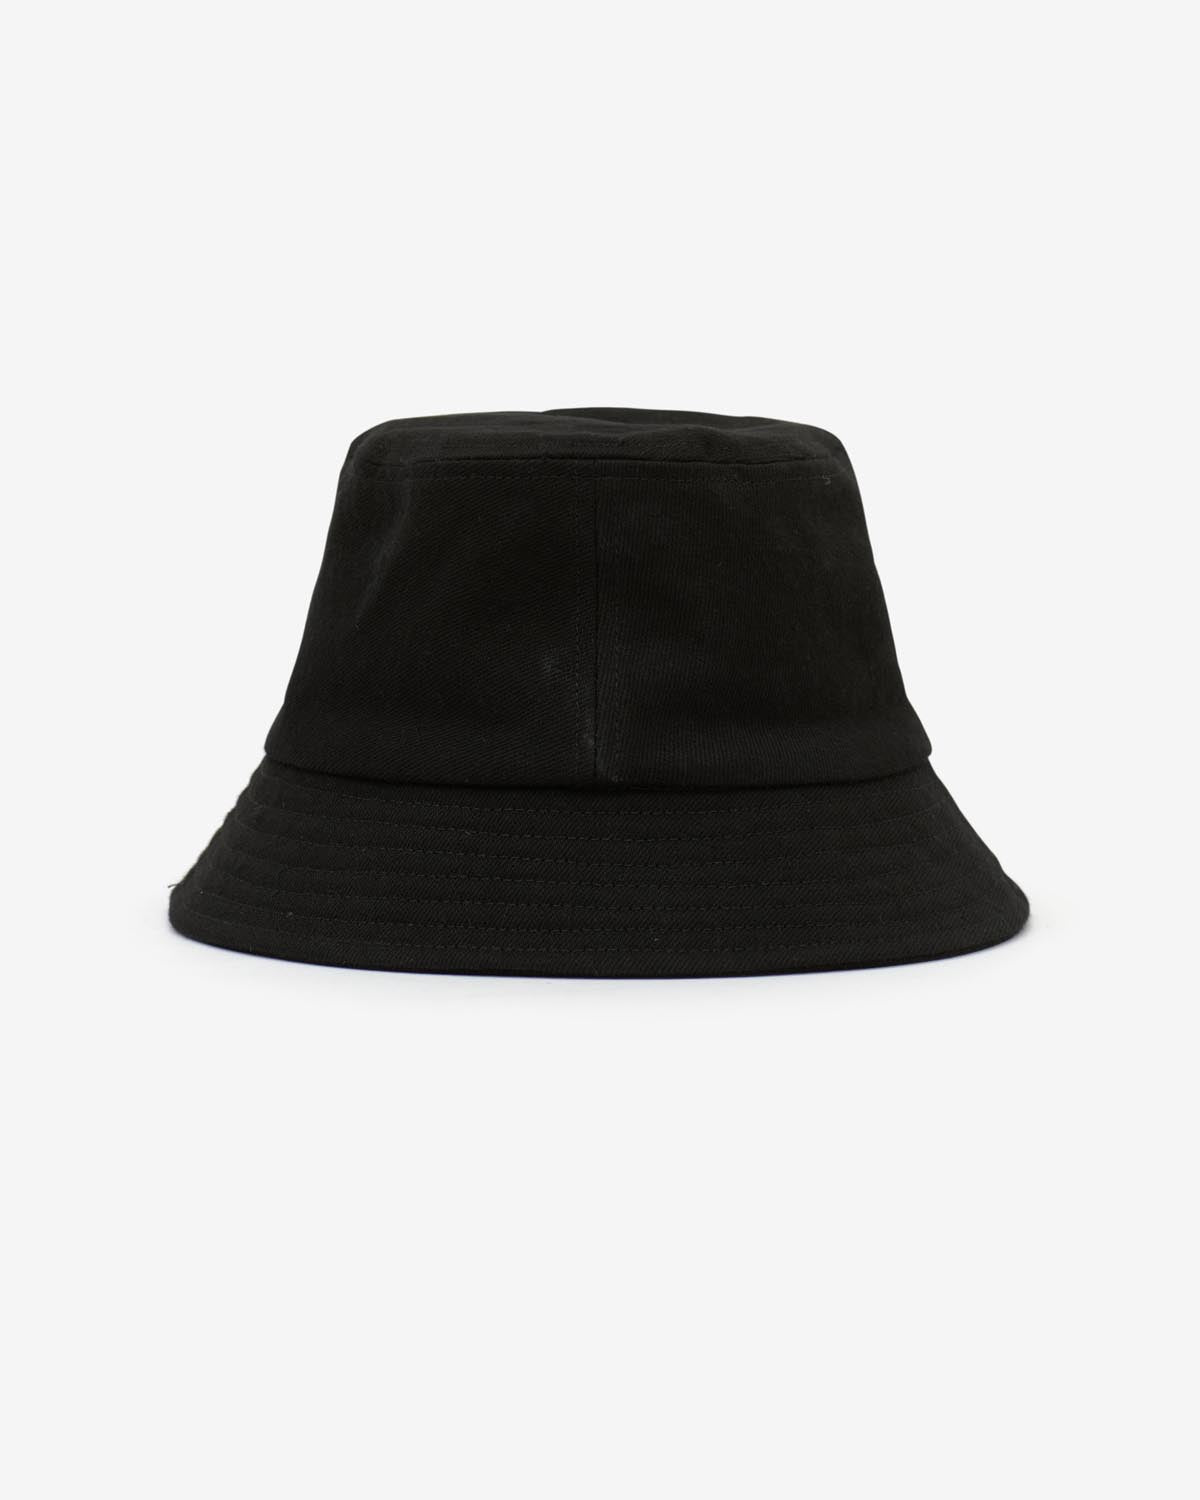 Sombrero haley Woman Black-black 2